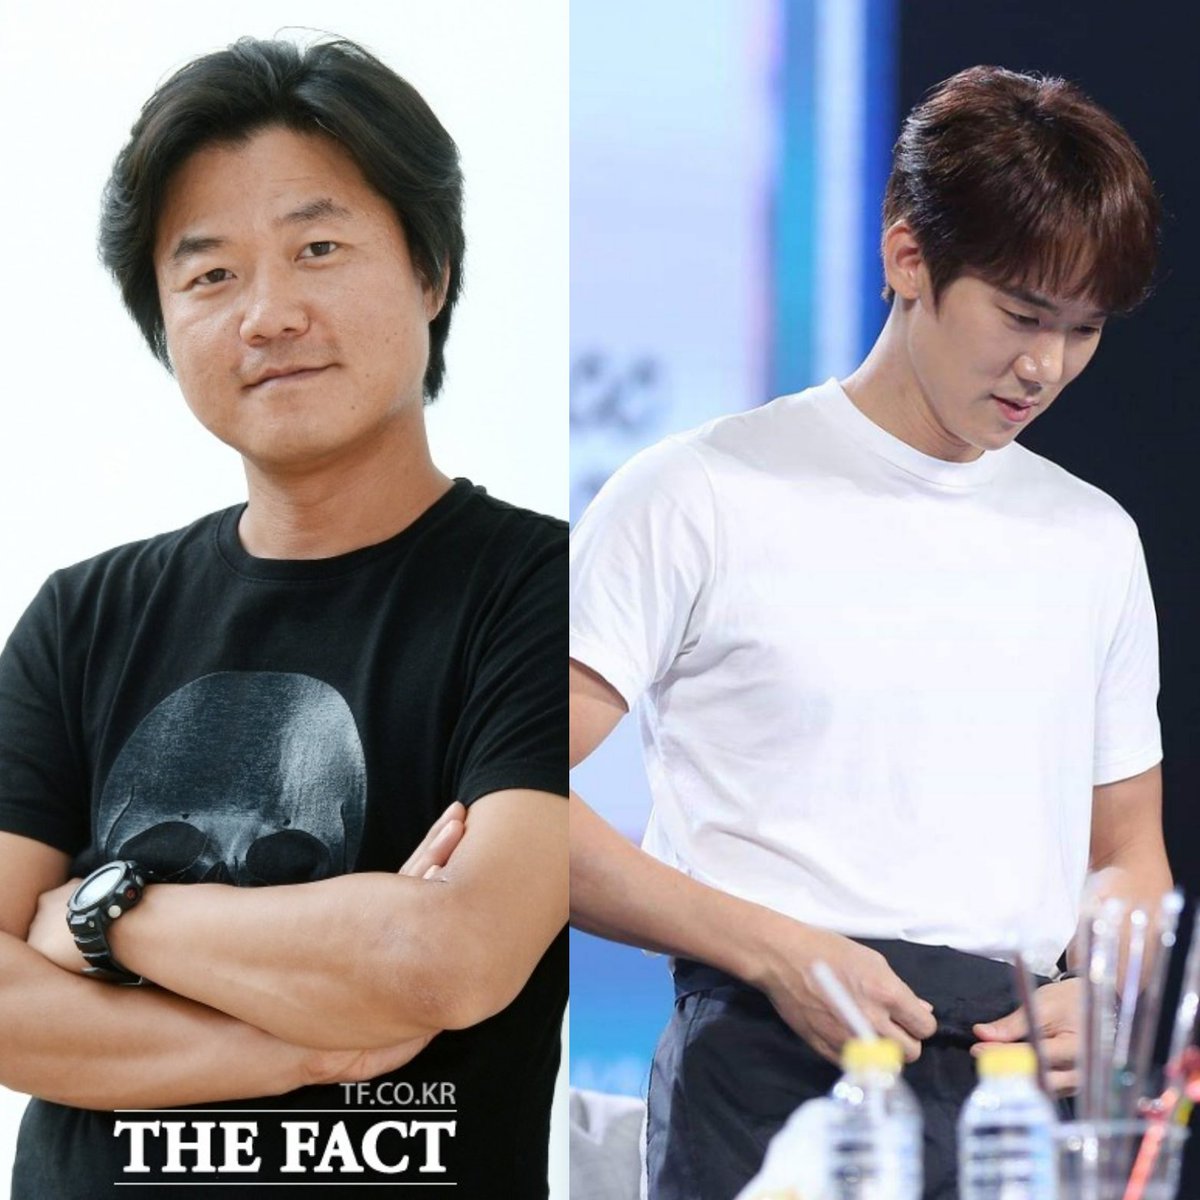 9 ㅡ "He's very responsible and qualified for a lot of things ...Stars tend to get swayed and excited when they become popular.  #YooYeonSeok has a firm sense of 'his own self'"   #NaPD (when asked who's the best groom material among his cast), Aug 2016 https://yeoniverse.wordpress.com/2016/08/17/eng-tf-interview-na-young-seok-pd%e2%91%a3-yoo-yeon-seok-best-bridegroom-material-will-never-let-one-starve/